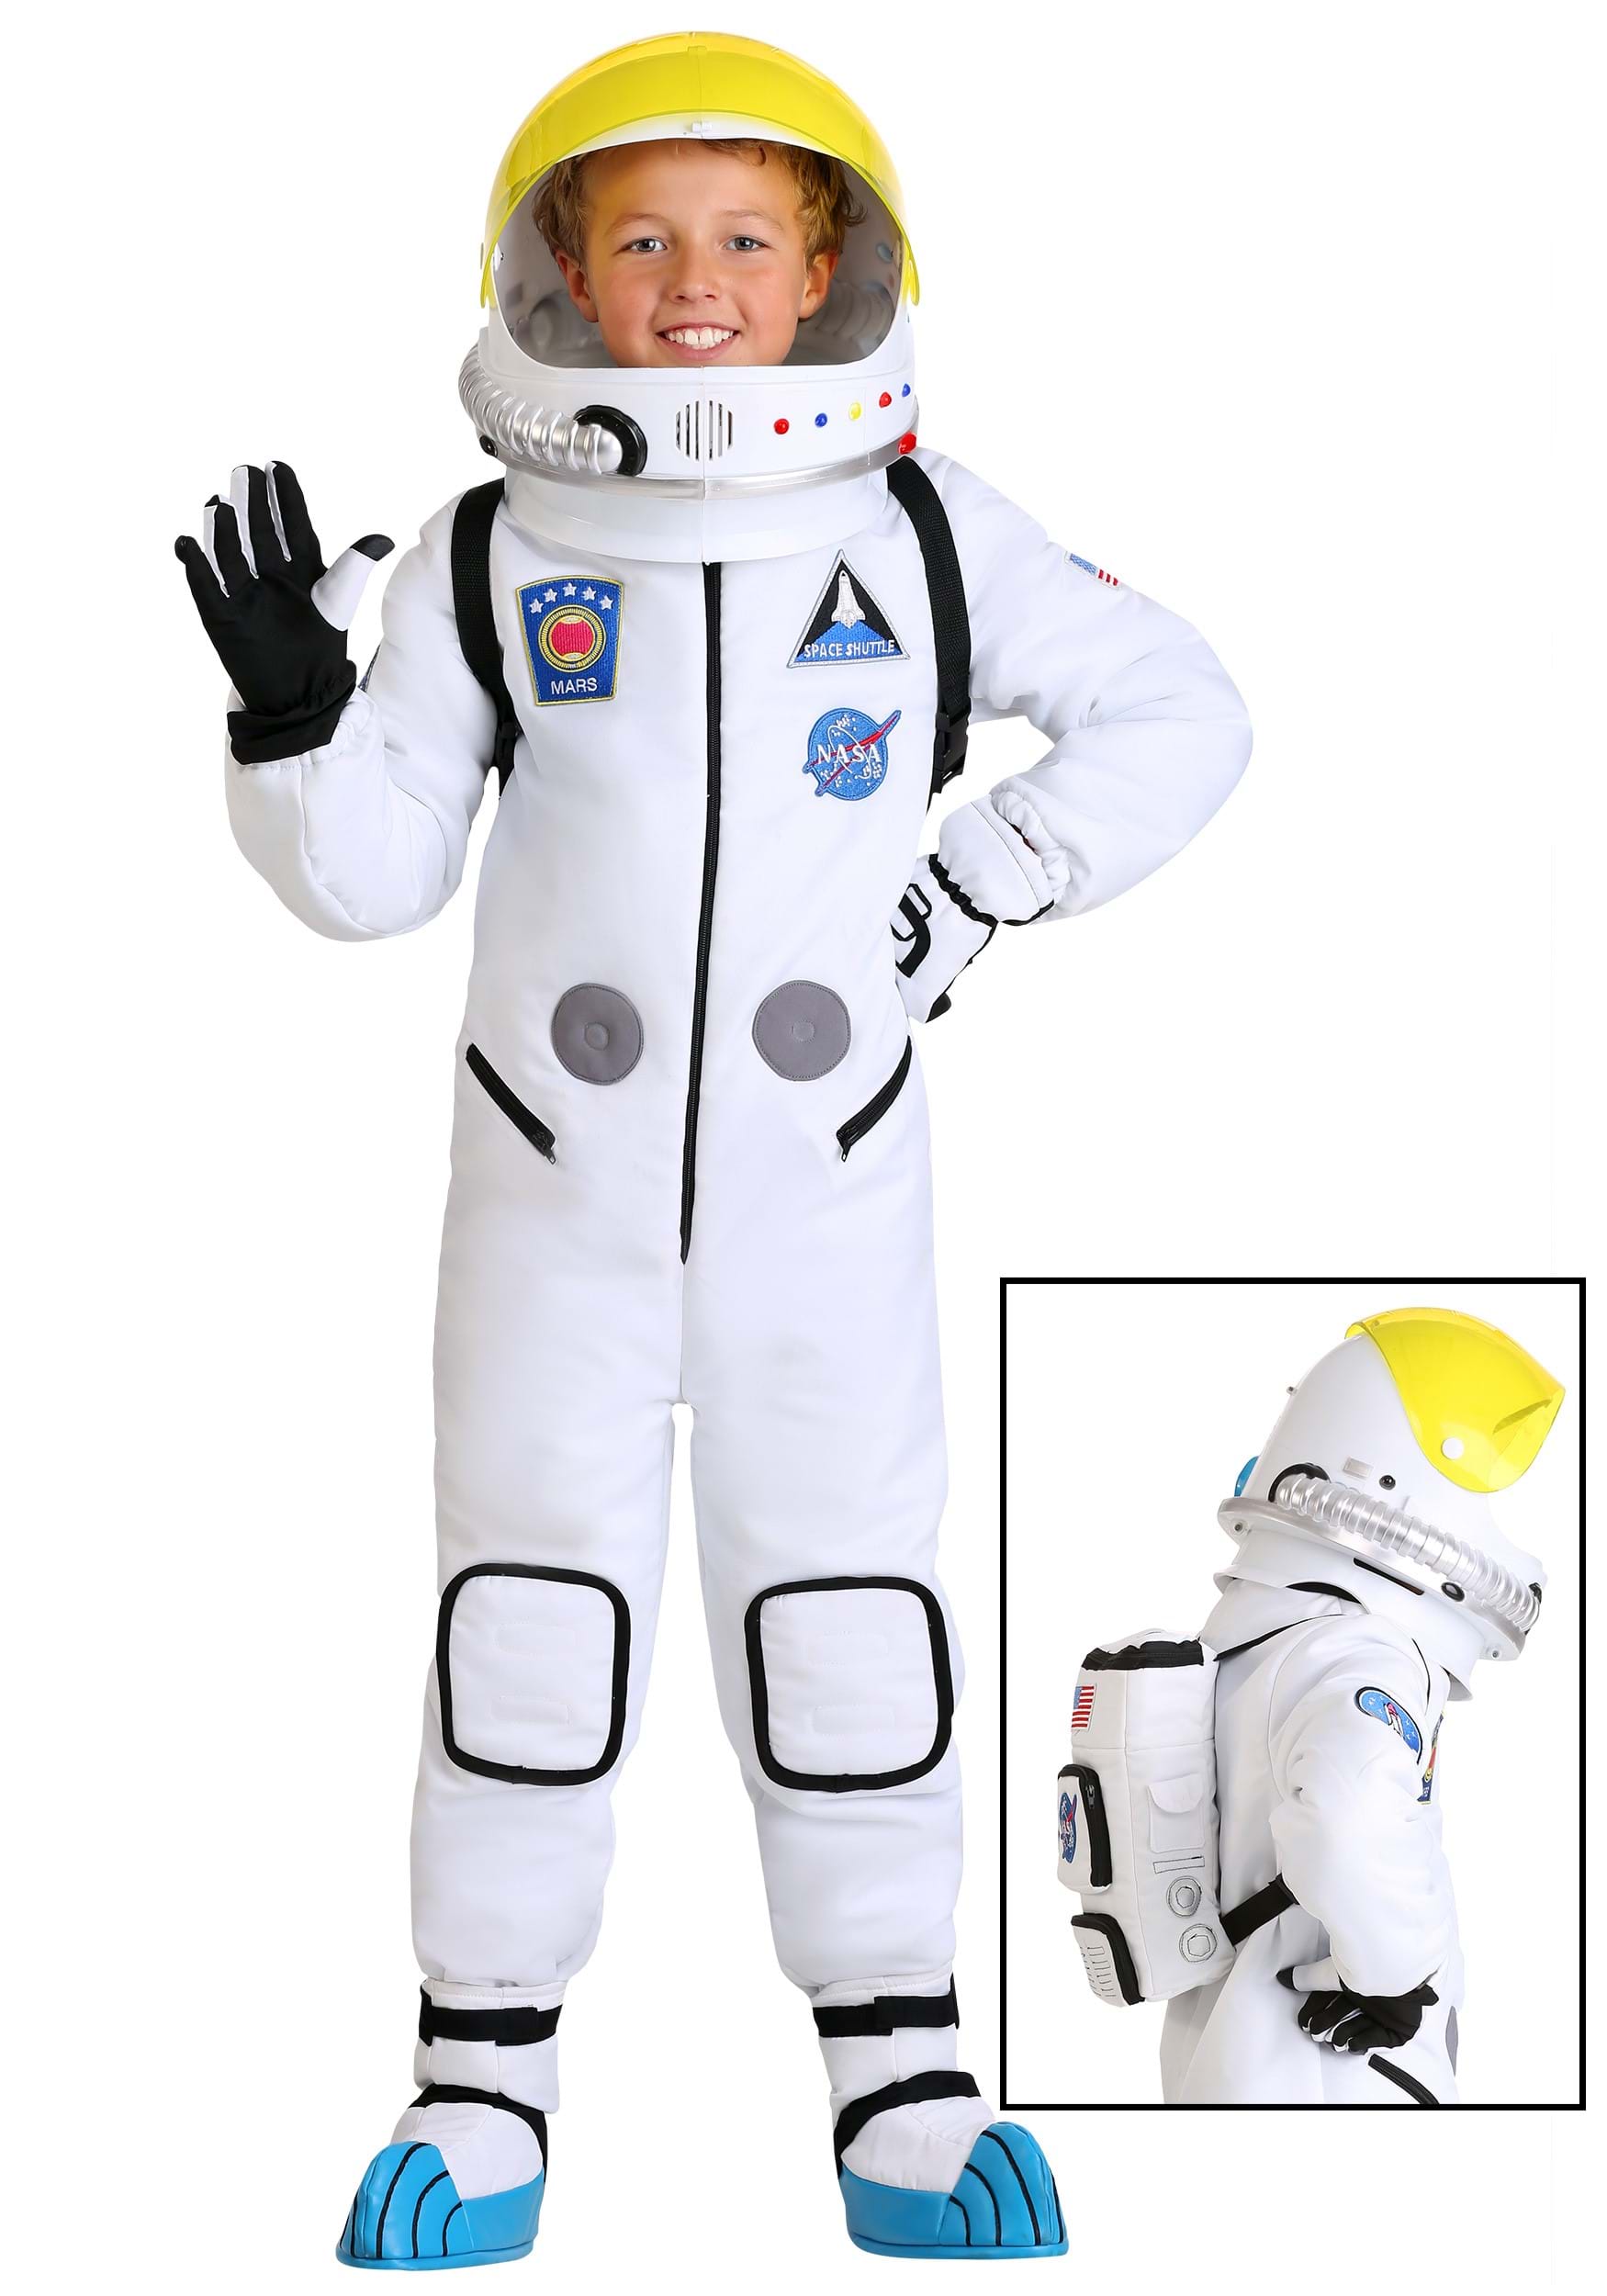 Kid’s Deluxe Astronaut Costume